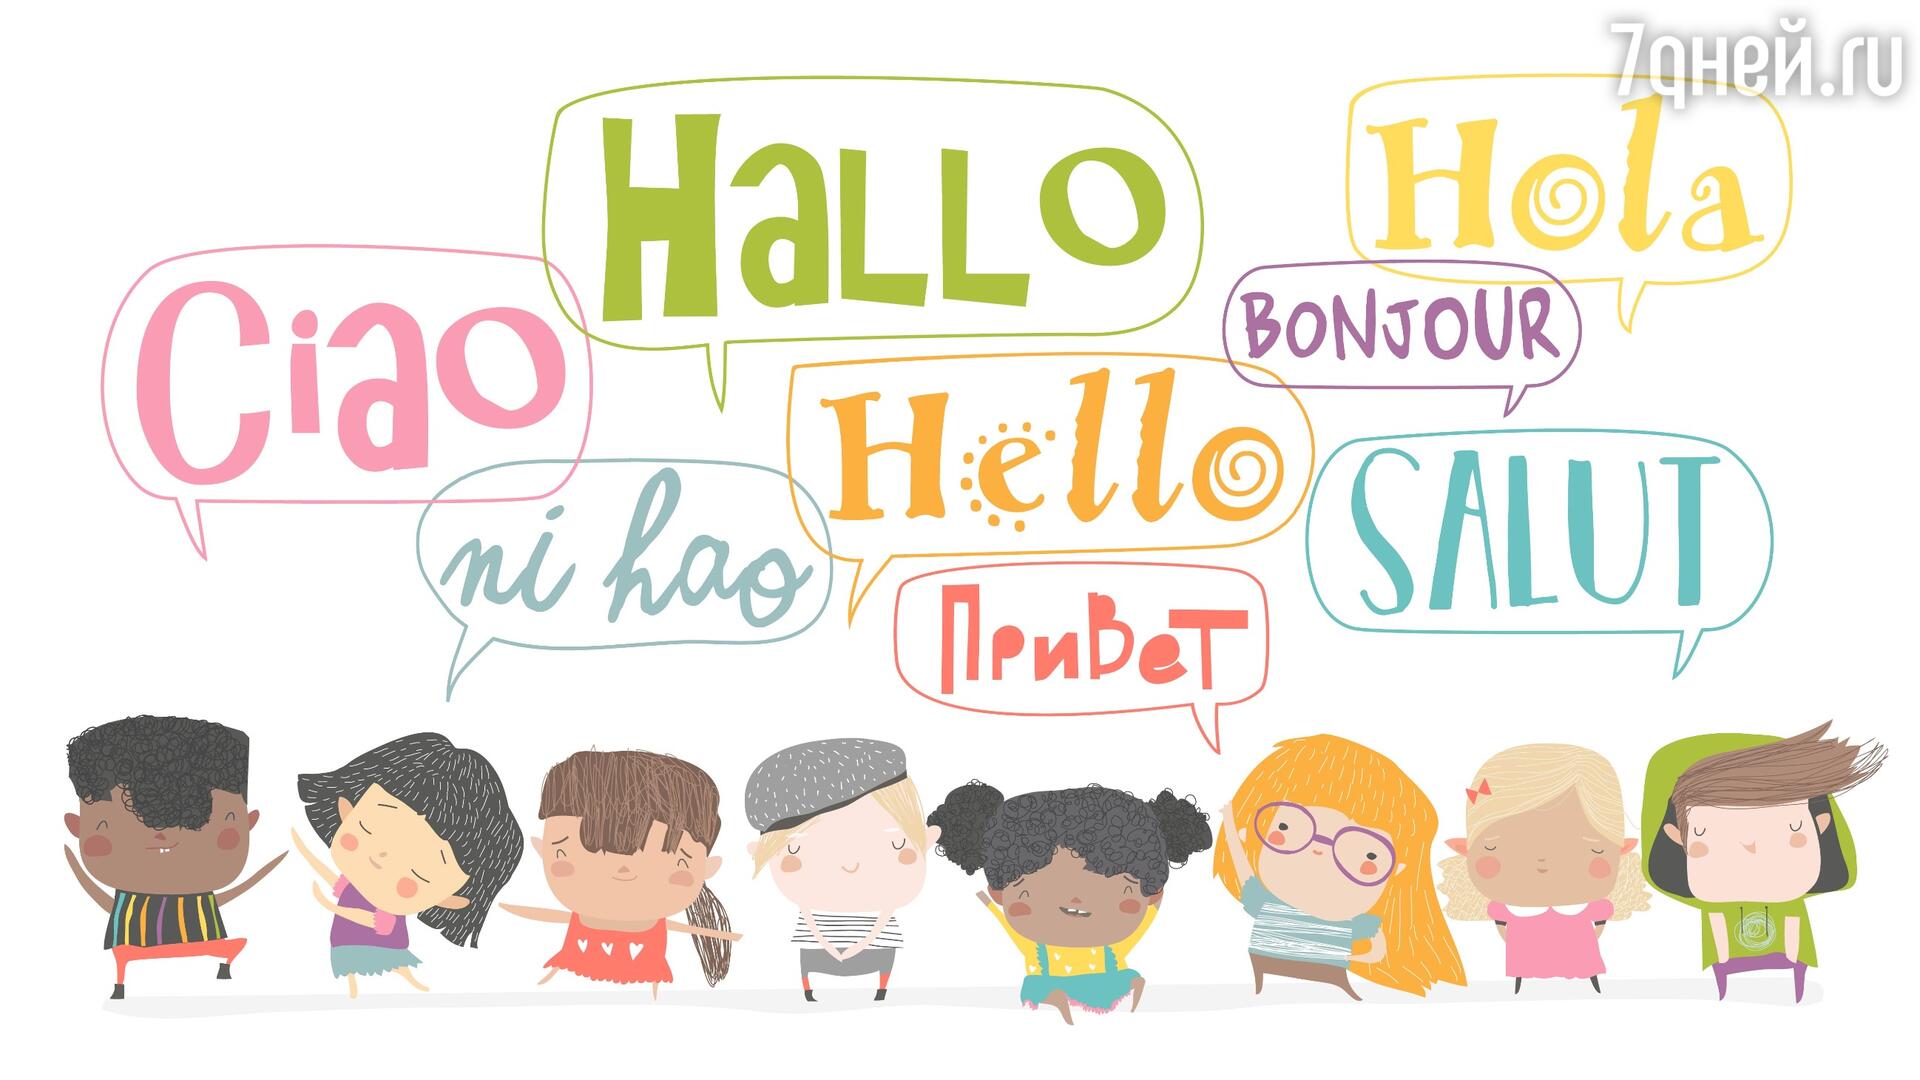 21 февраля — Международный день родного языка как праздновать с детьми